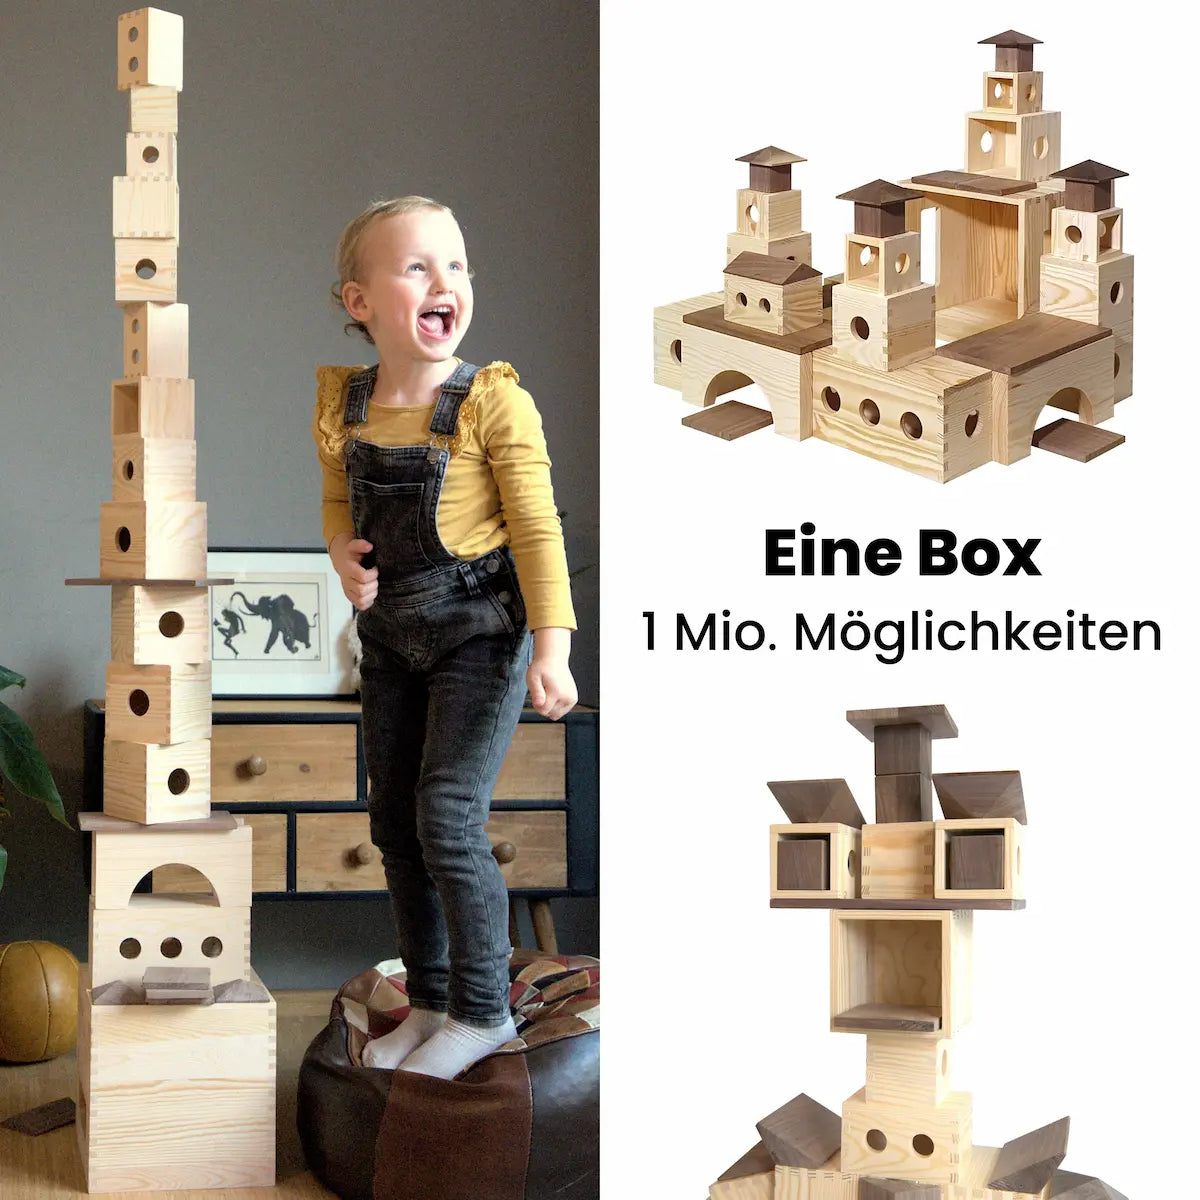 Vertikal geteiltes Bild_Links eine lachendes Kind neben einem hohen Turm aus Bauklötzen der Matzboox, Rechts 2 Baumuster und dazwischen der Text " Eine Box - eine Millionen Möglichkeiten"